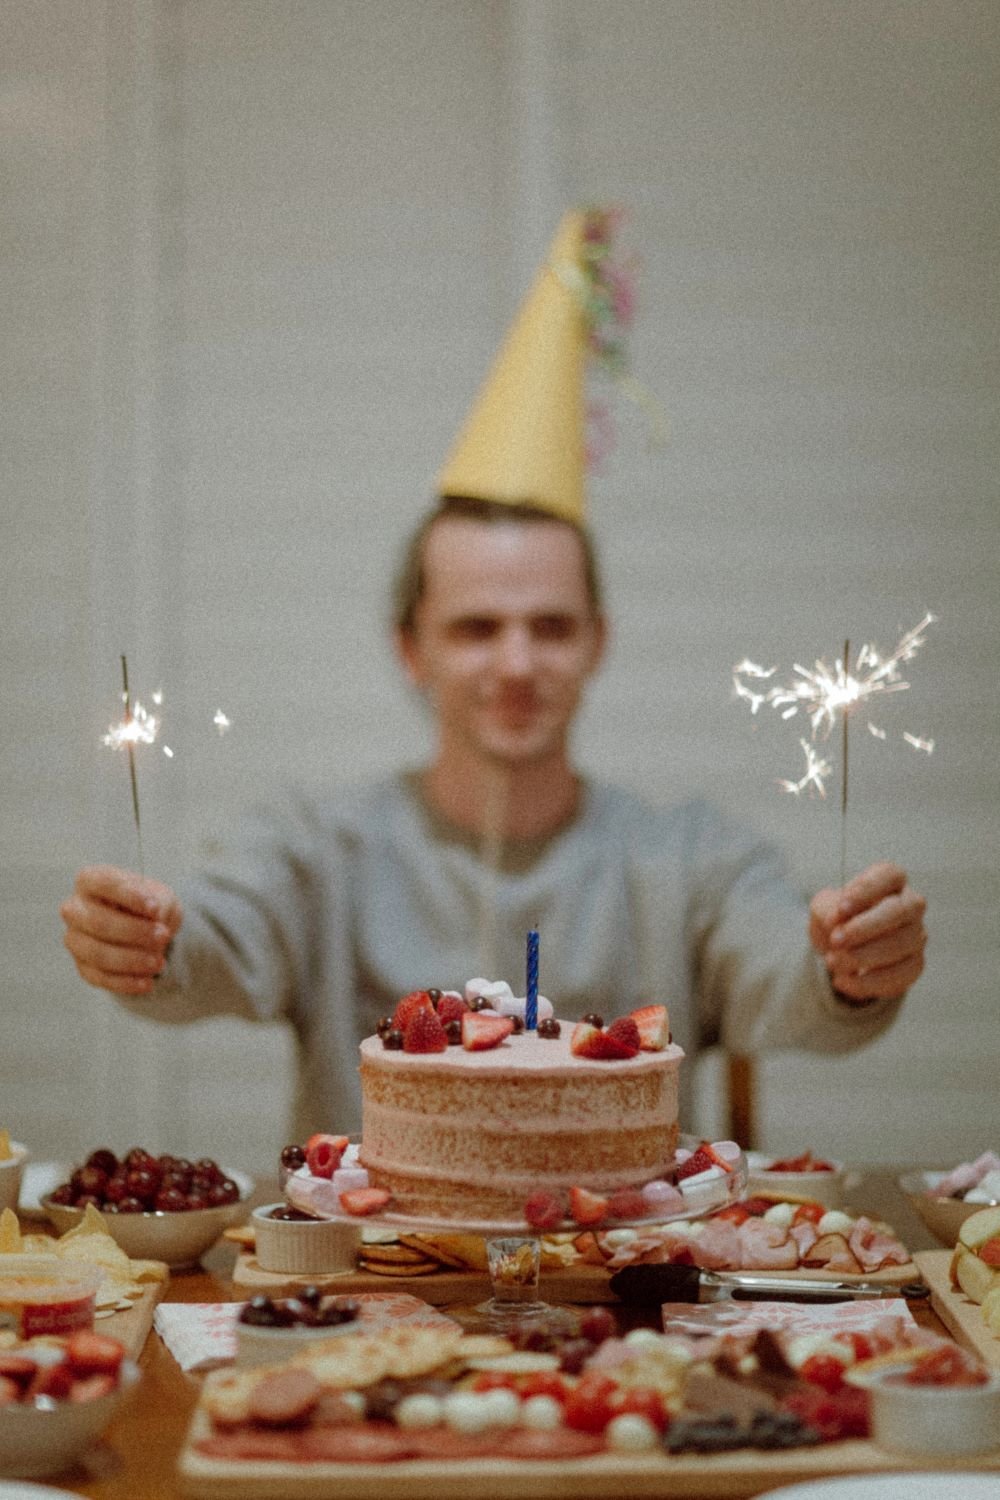 Homem com chapéu de aniversário segurando velas sobre seu bolo.